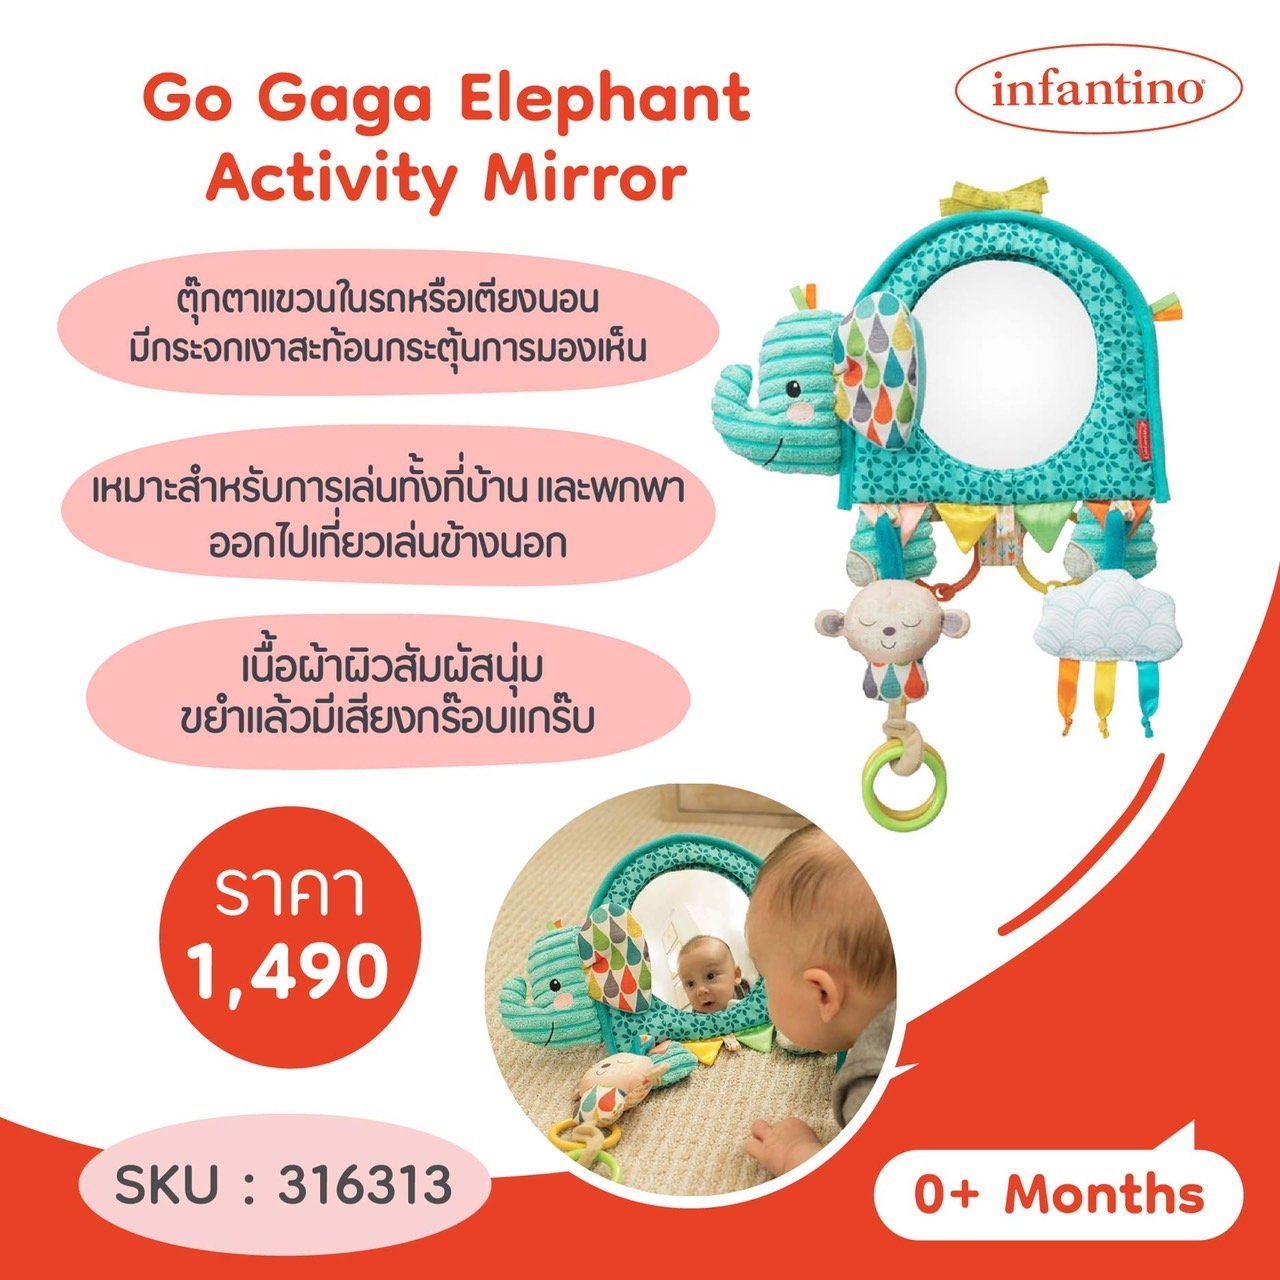 โมบายกระจกกิจกรรม รูปช้าง Go Gaga Elephant Activity Mirror